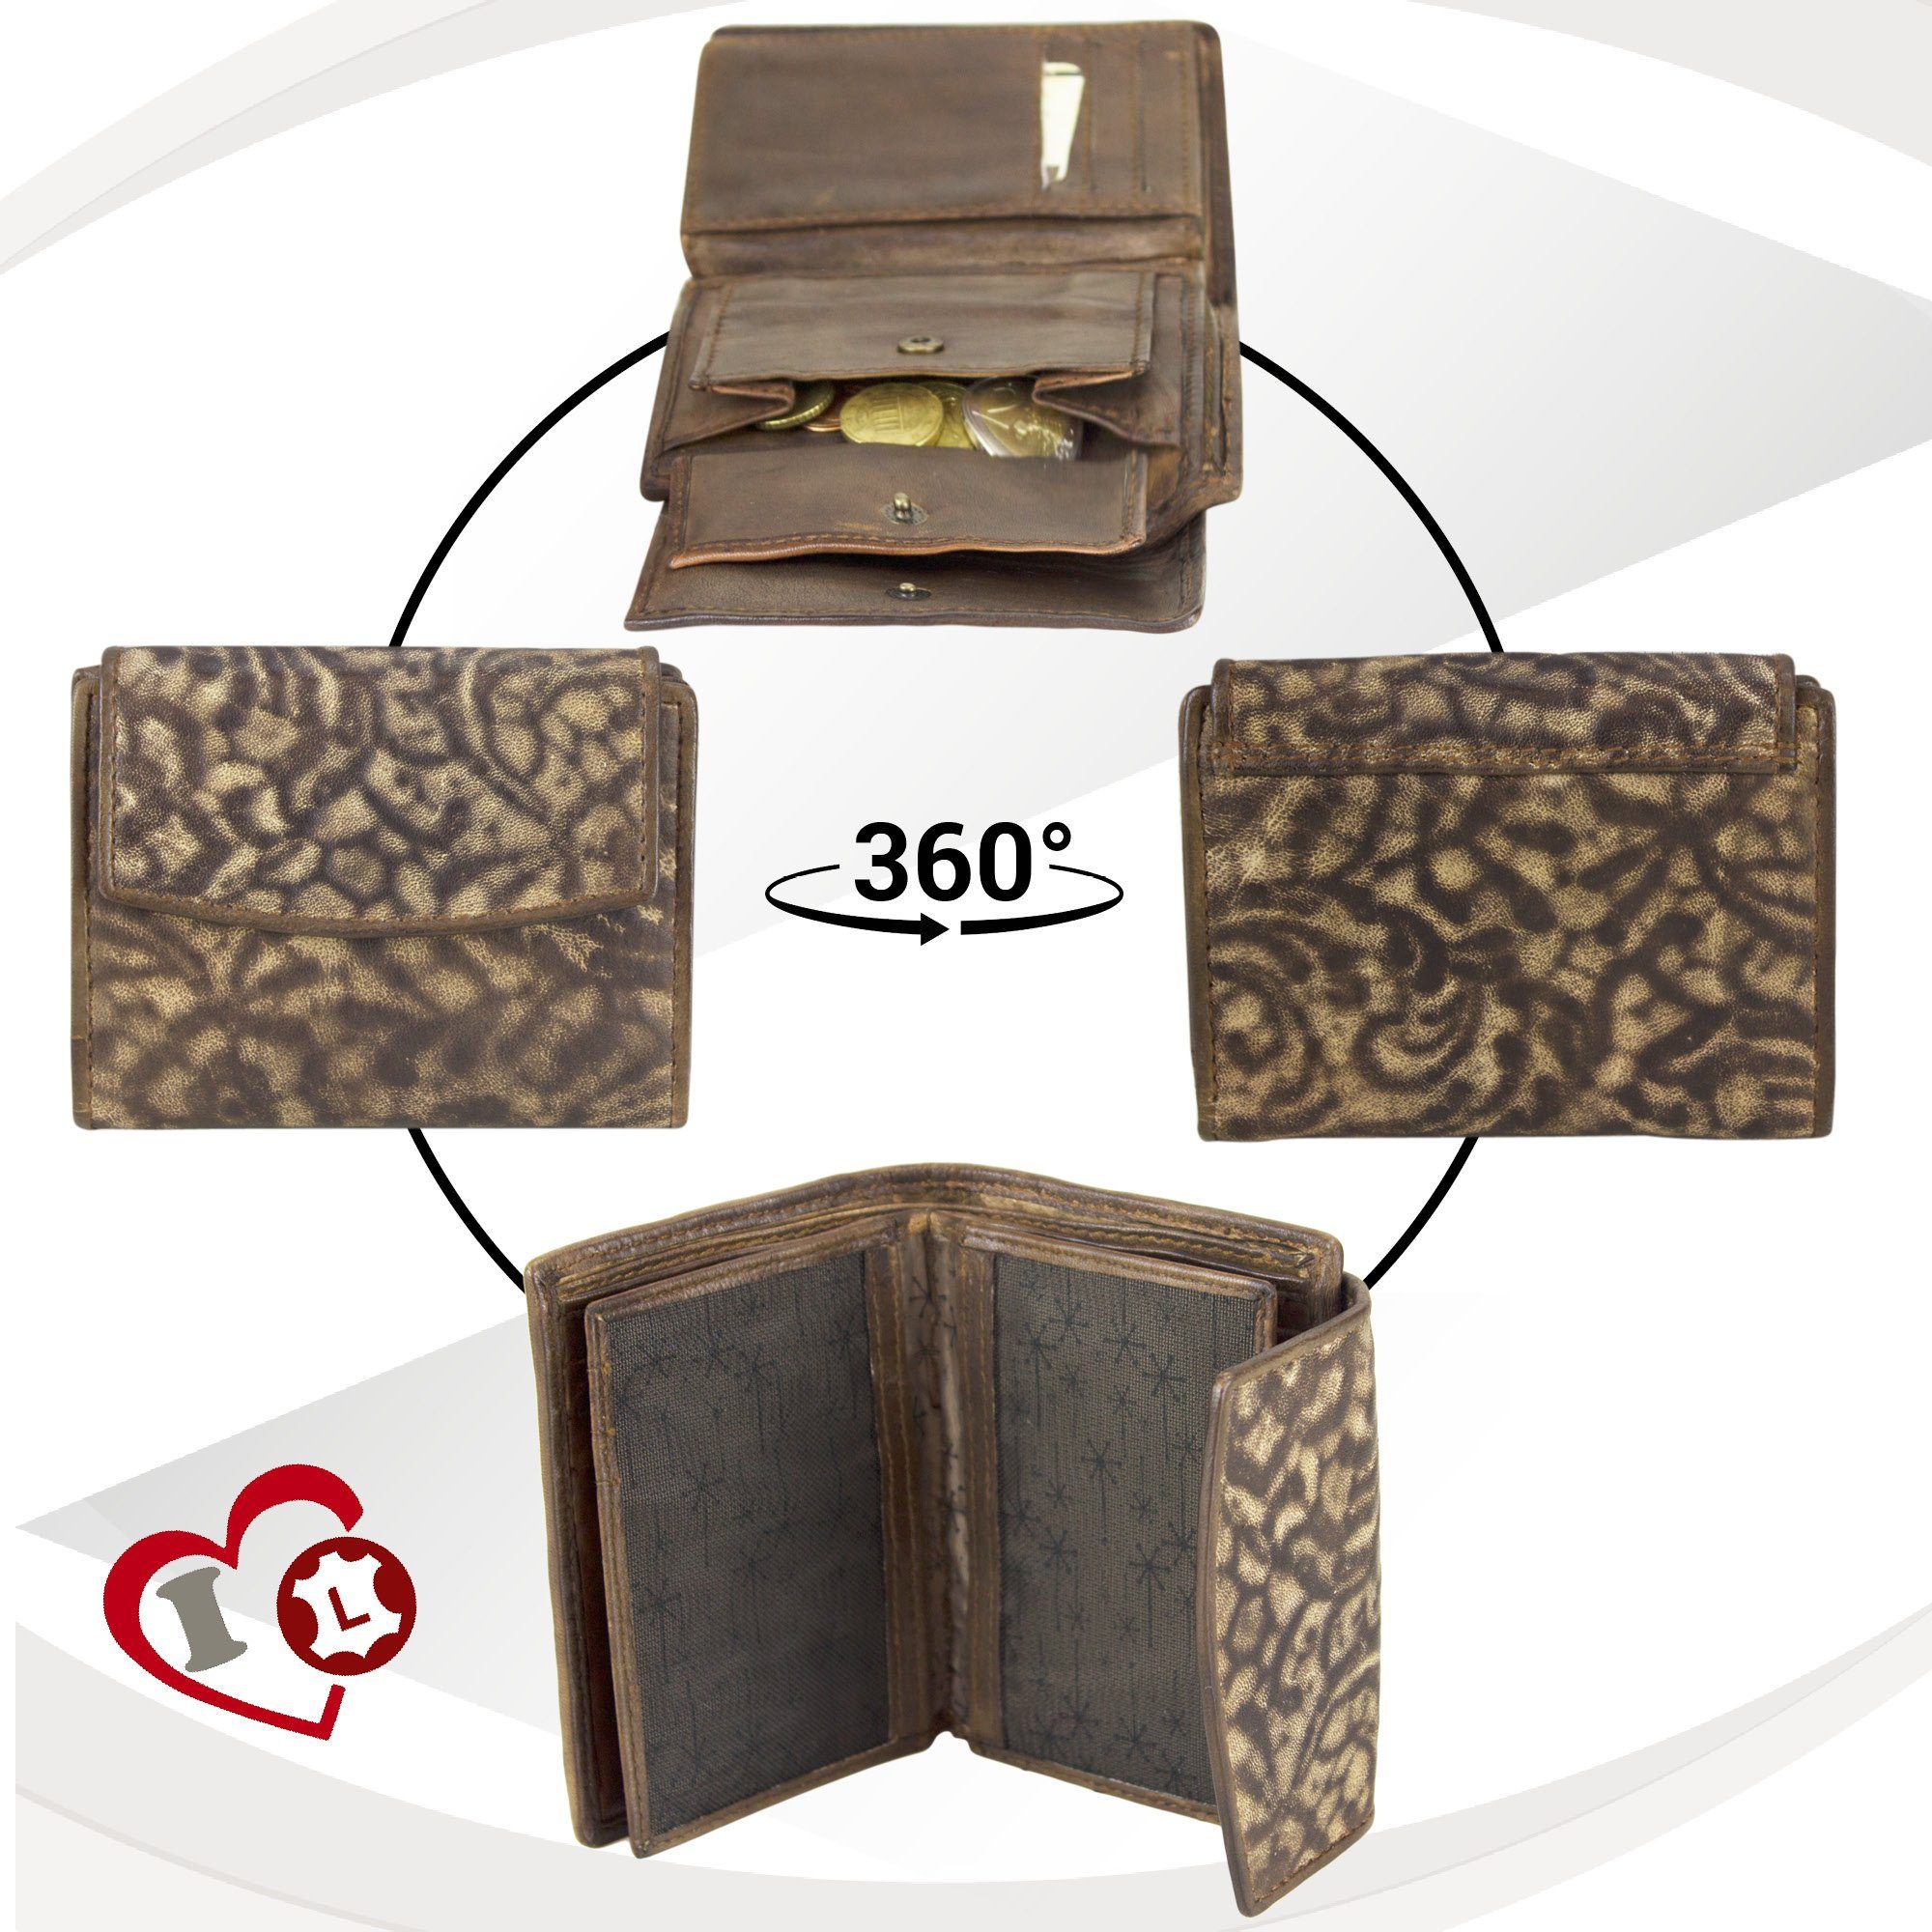 Leder, Brieftasche RFID-Schutz, mit Vintage zeitlos Vintage Geldbeutel Style, Geldbörse Sunsa Damen, Kleine braun echt Leder Portemonnaie